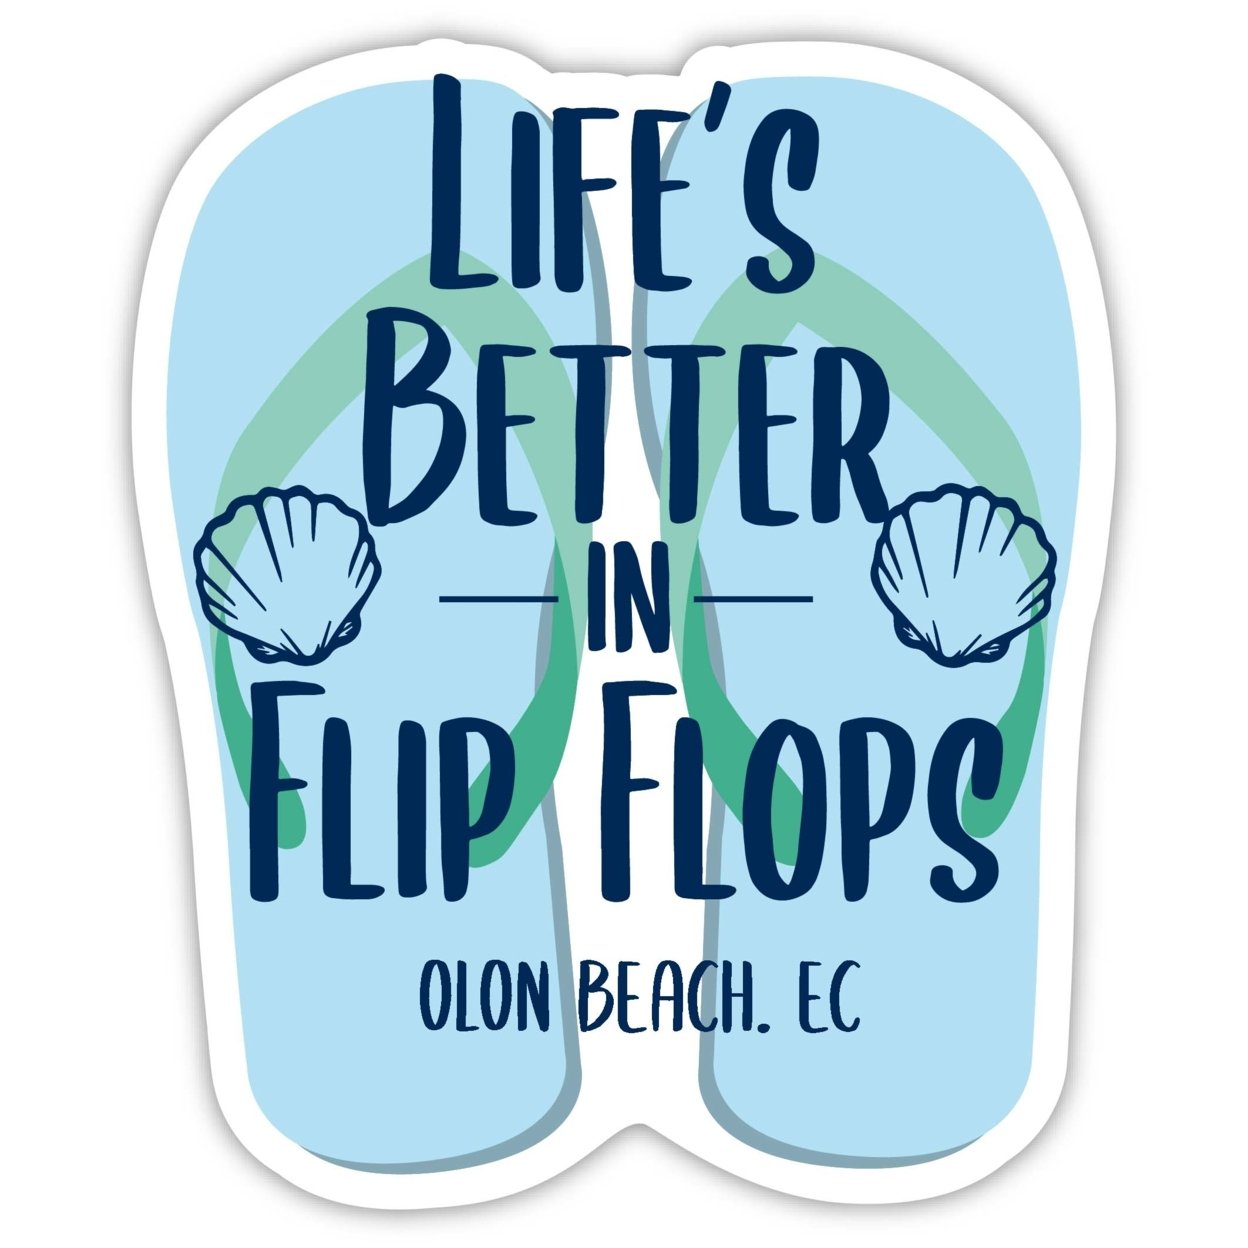 Olon Beach Ecuador Souvenir 4 Inch Vinyl Decal Sticker Flip Flop Design